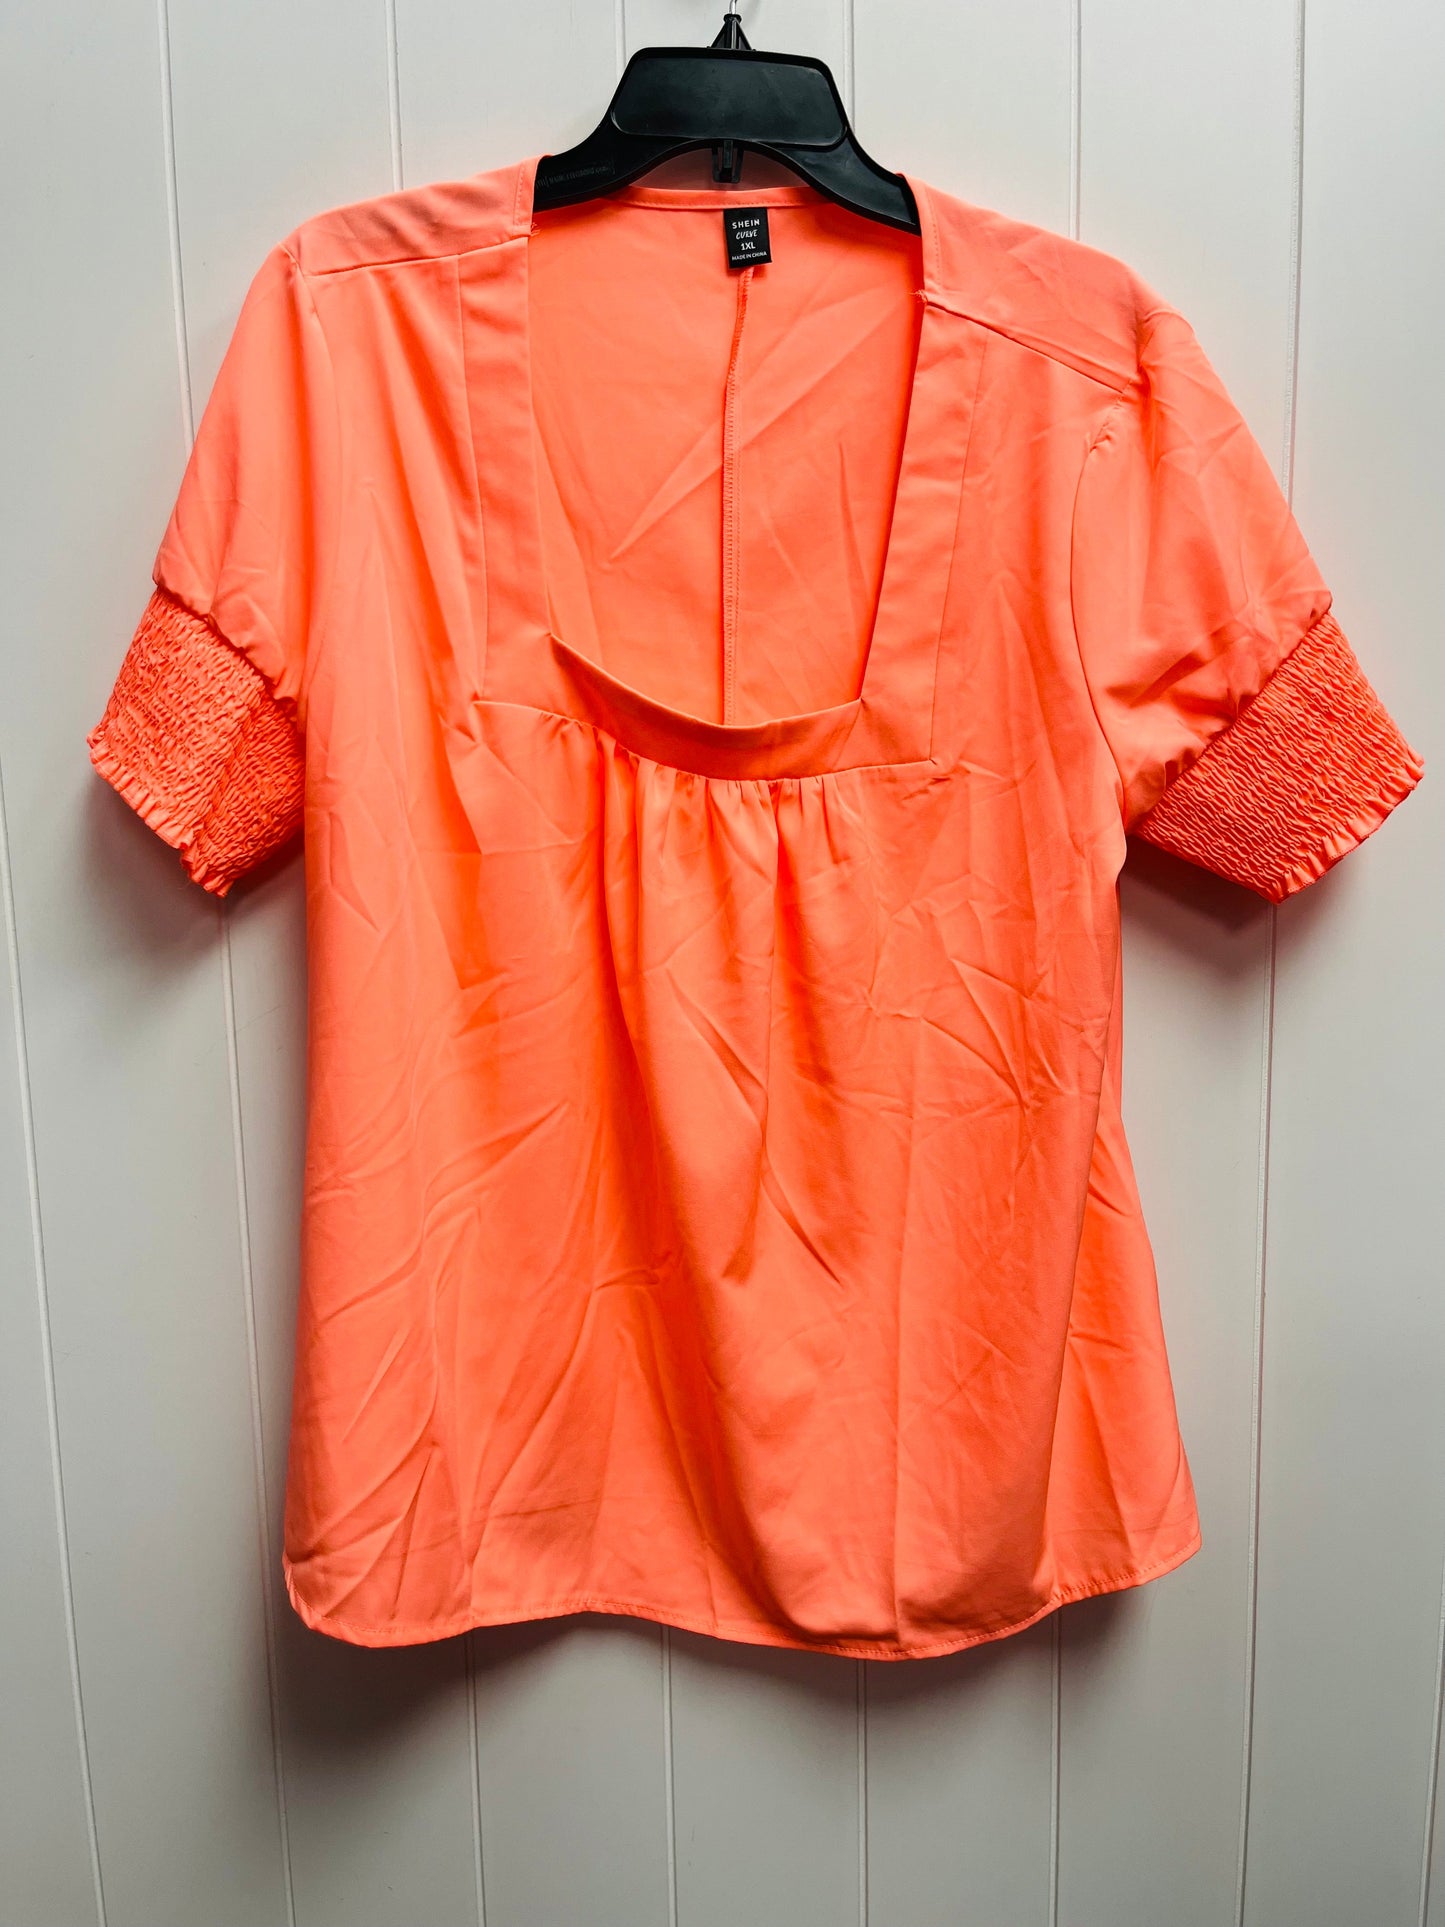 Orange Top Short Sleeve Shein, Size 1x